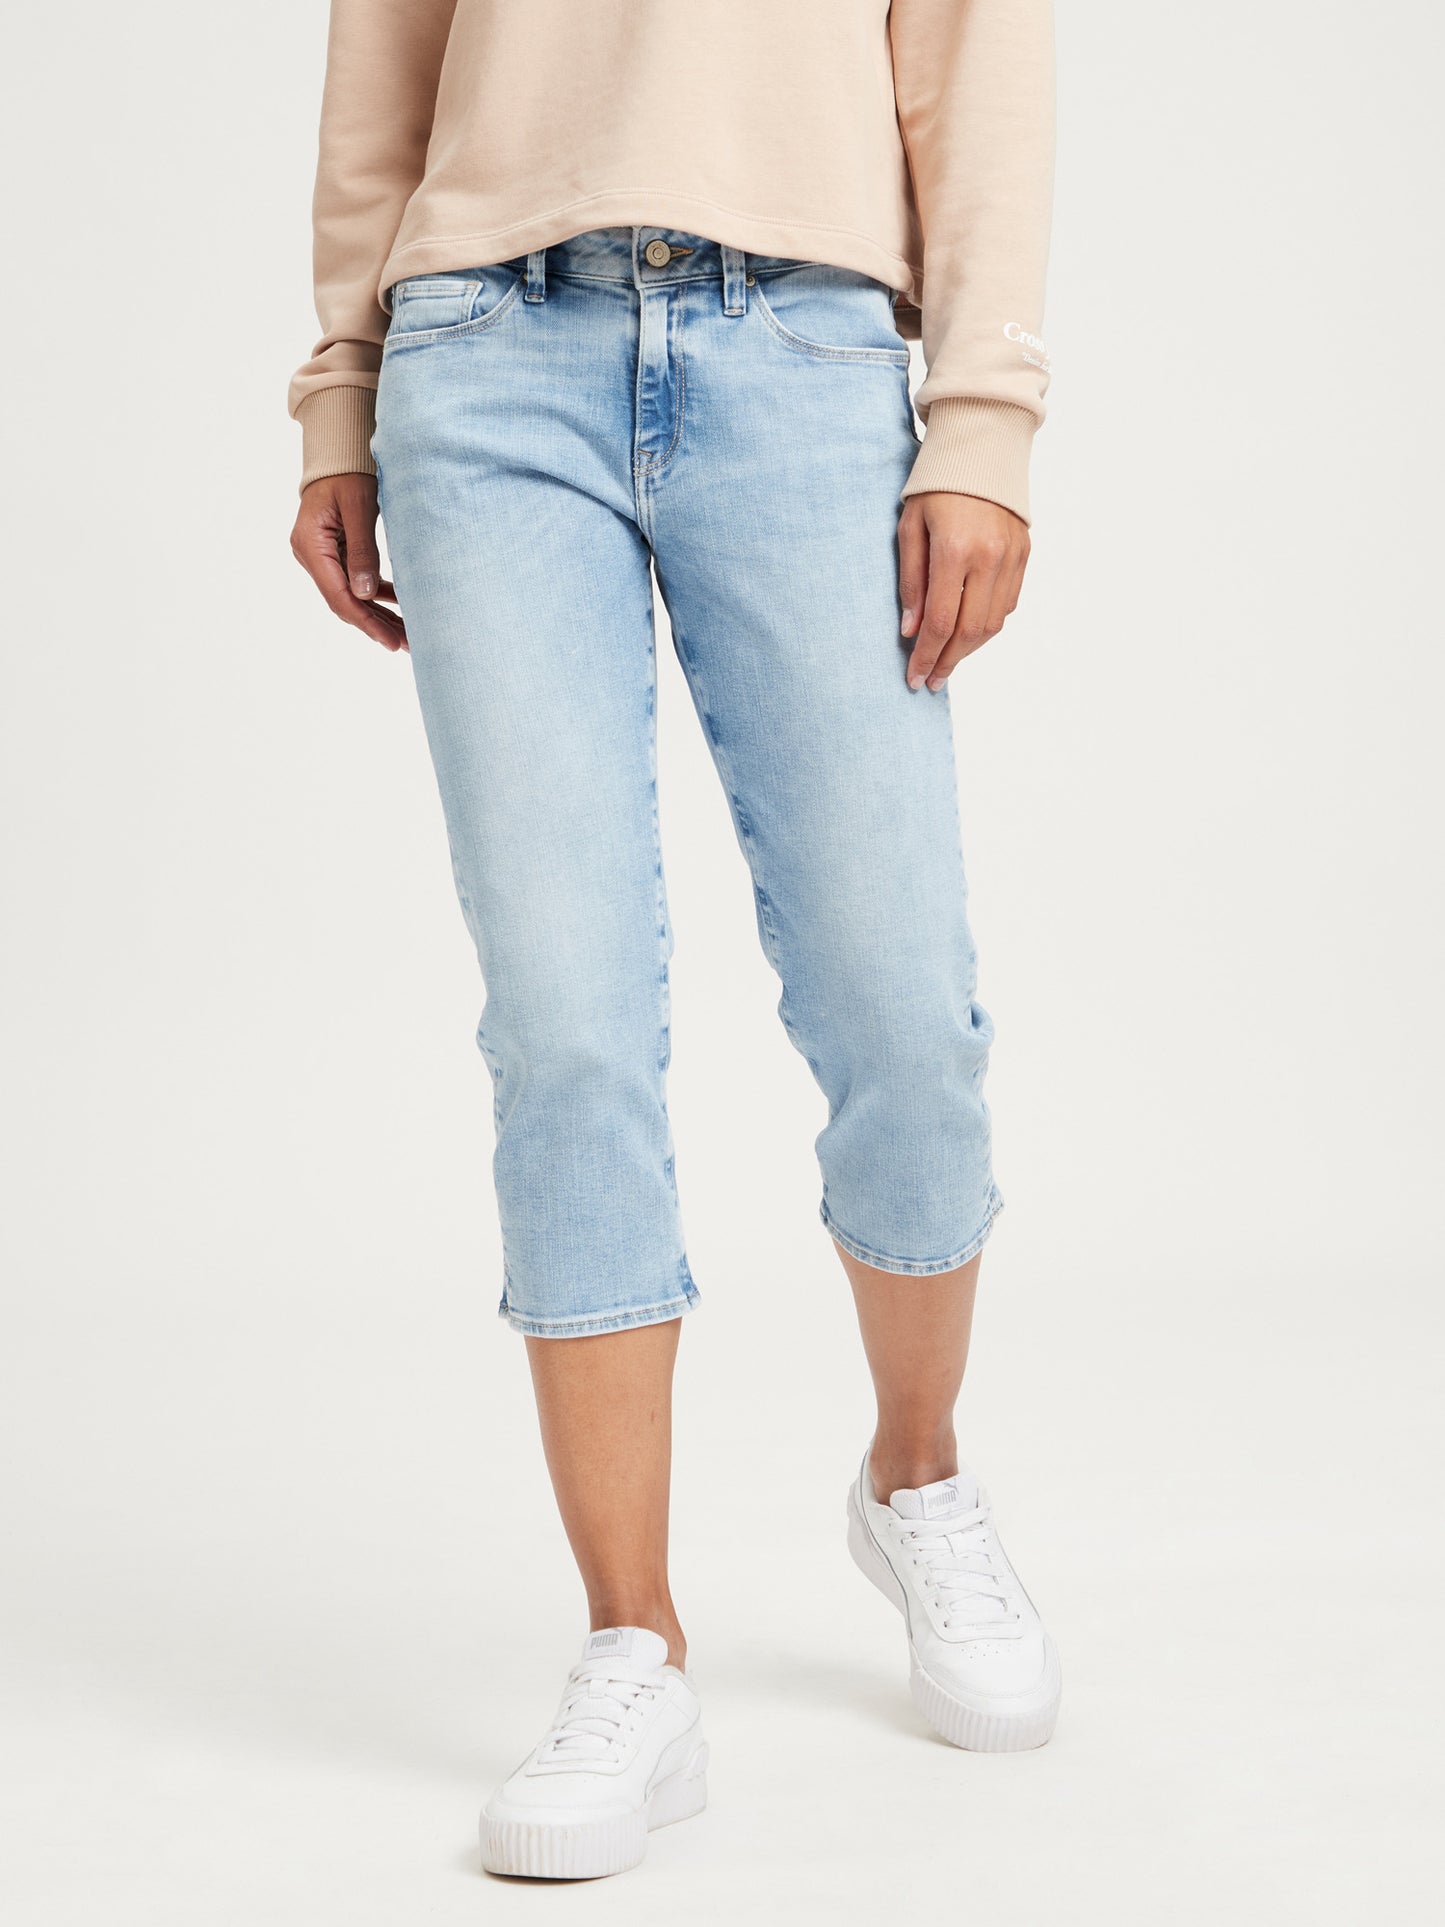 Amber Damen Capri-Jeans Slim Fit hellblau.